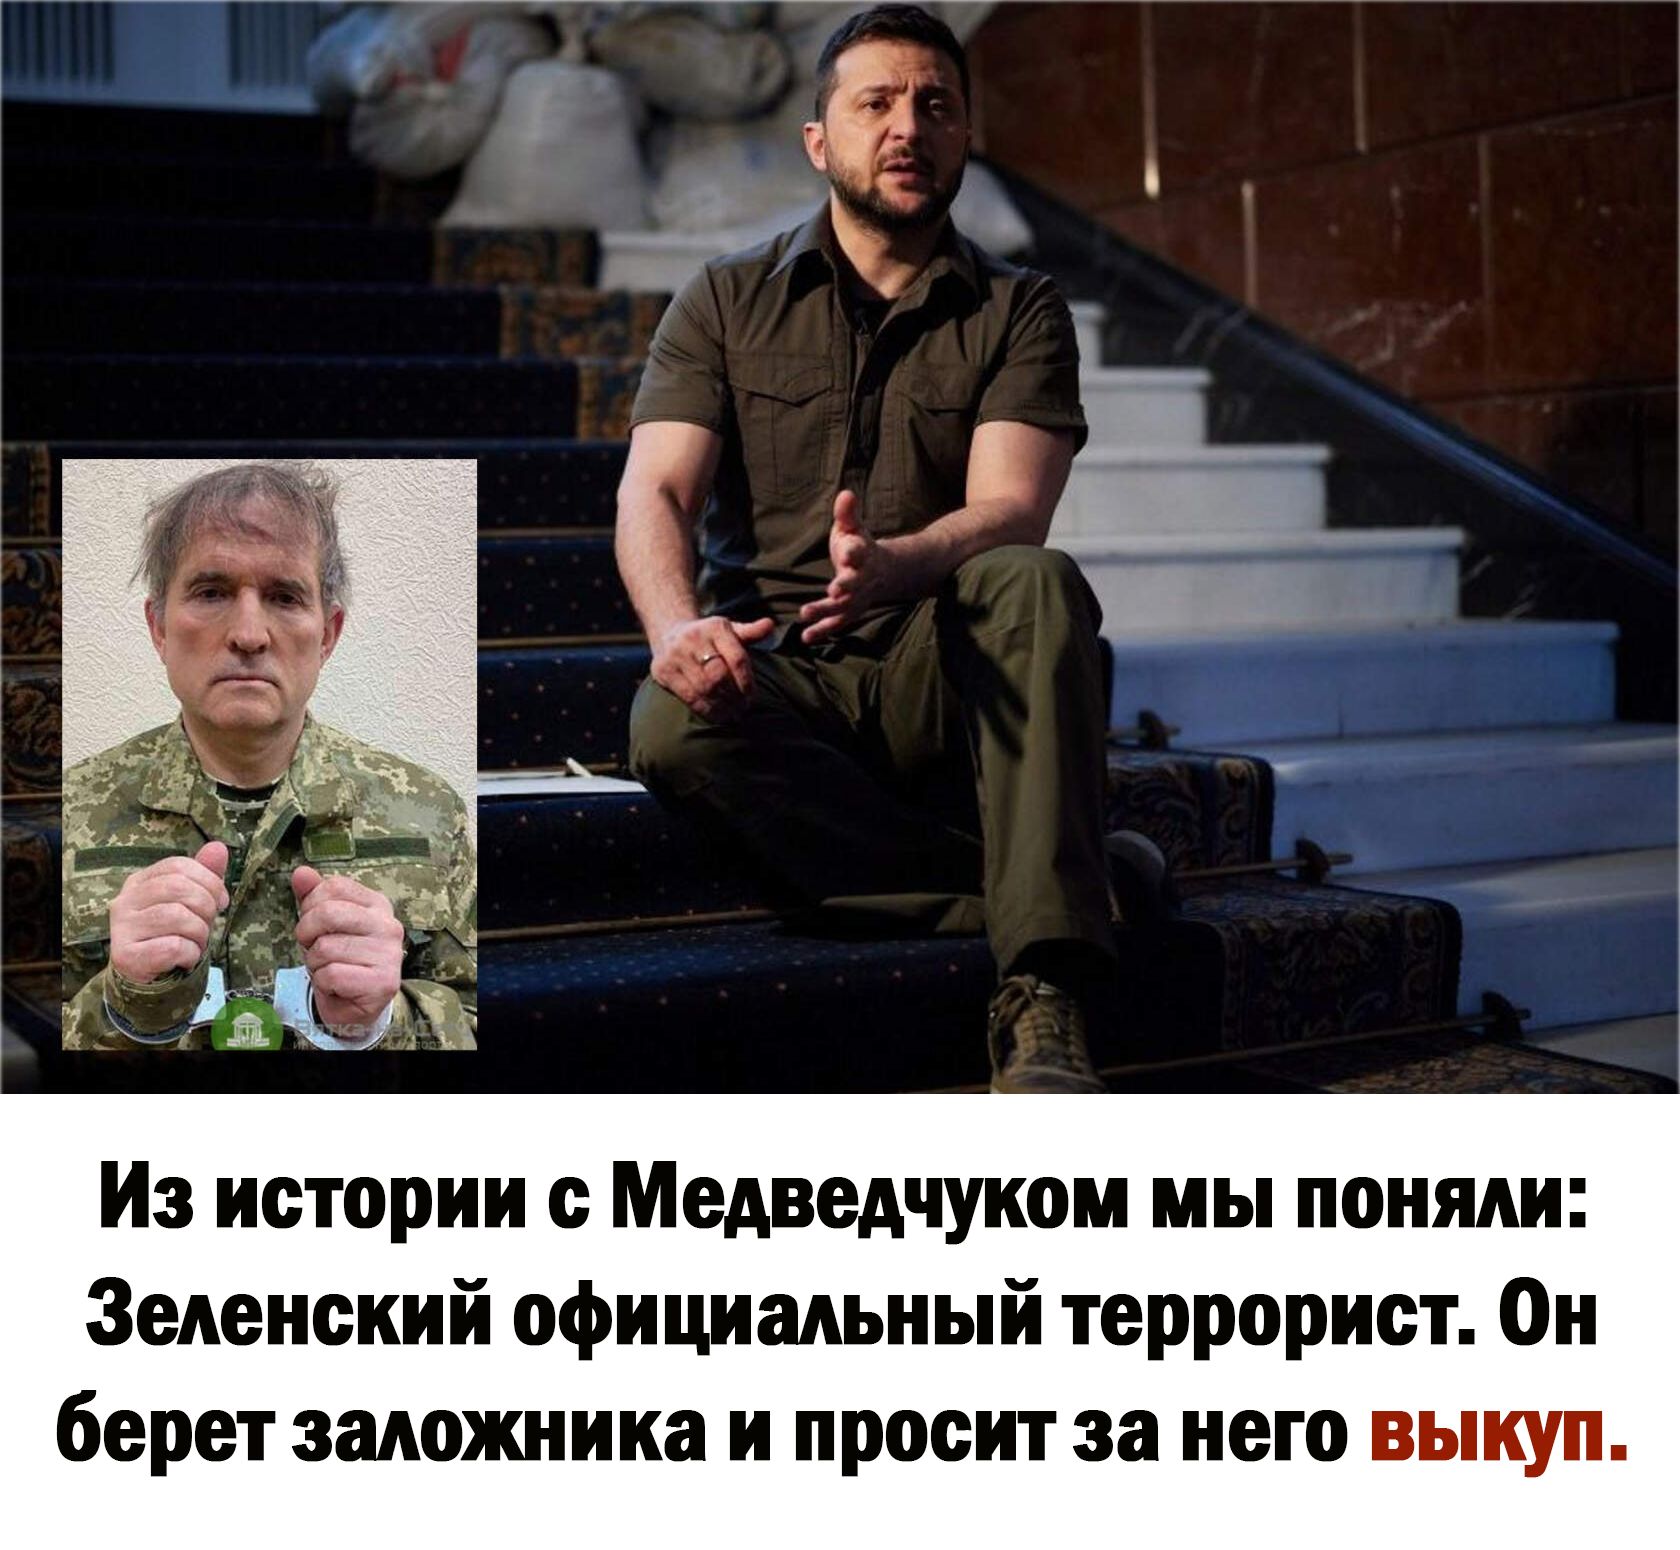 Из истории с Медведчуком мы поняли Зеленский официальный террорист Он берет заложника и просит за него выкуп